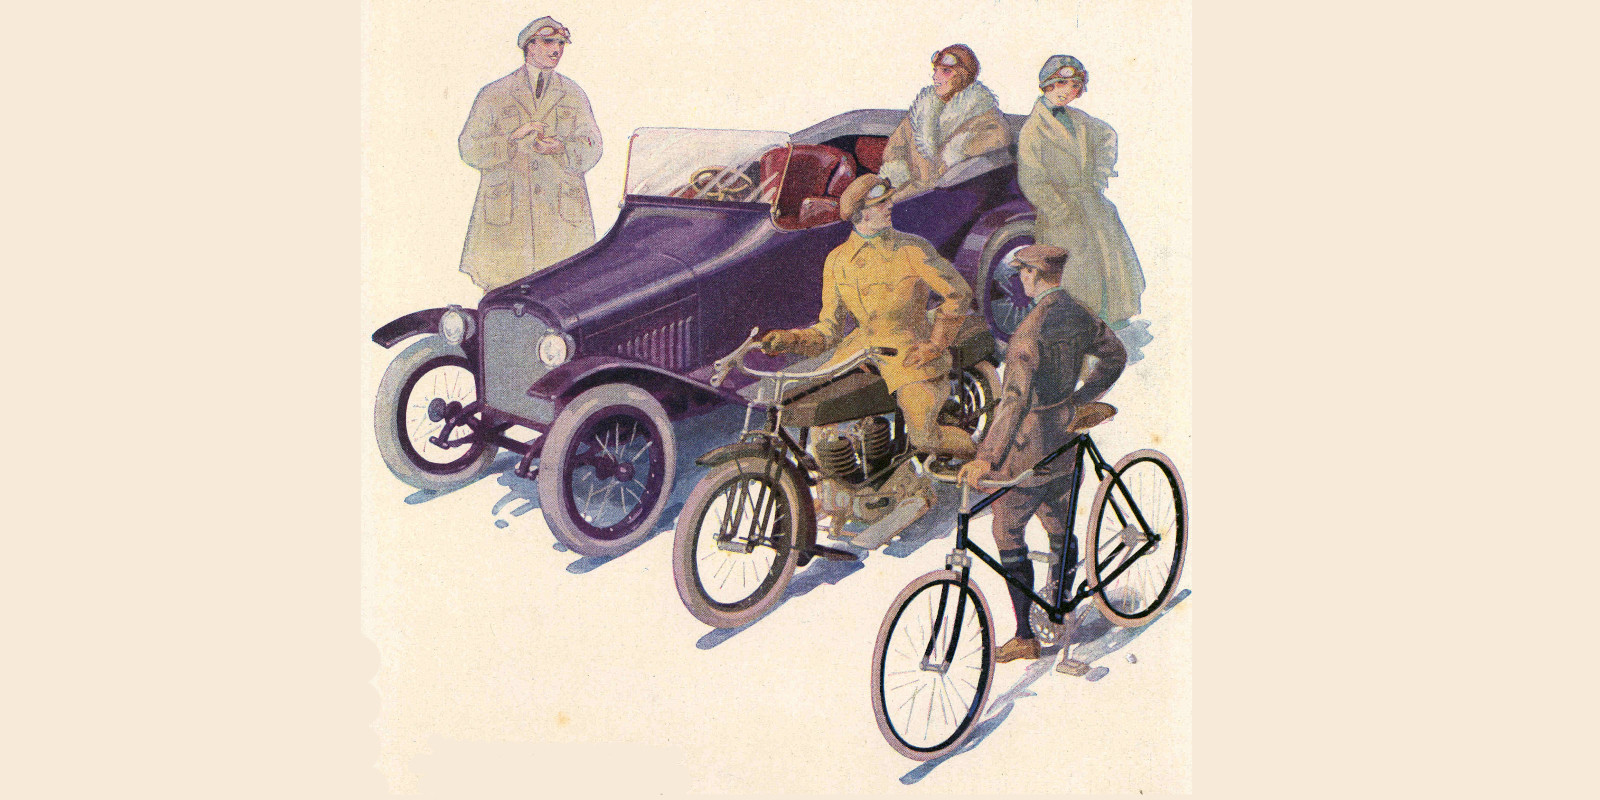 Gemalte, historische Werbung für Wanderer-Fahrzeuge mit Automobil, Motorrad und Fahrrad sowie Menschen